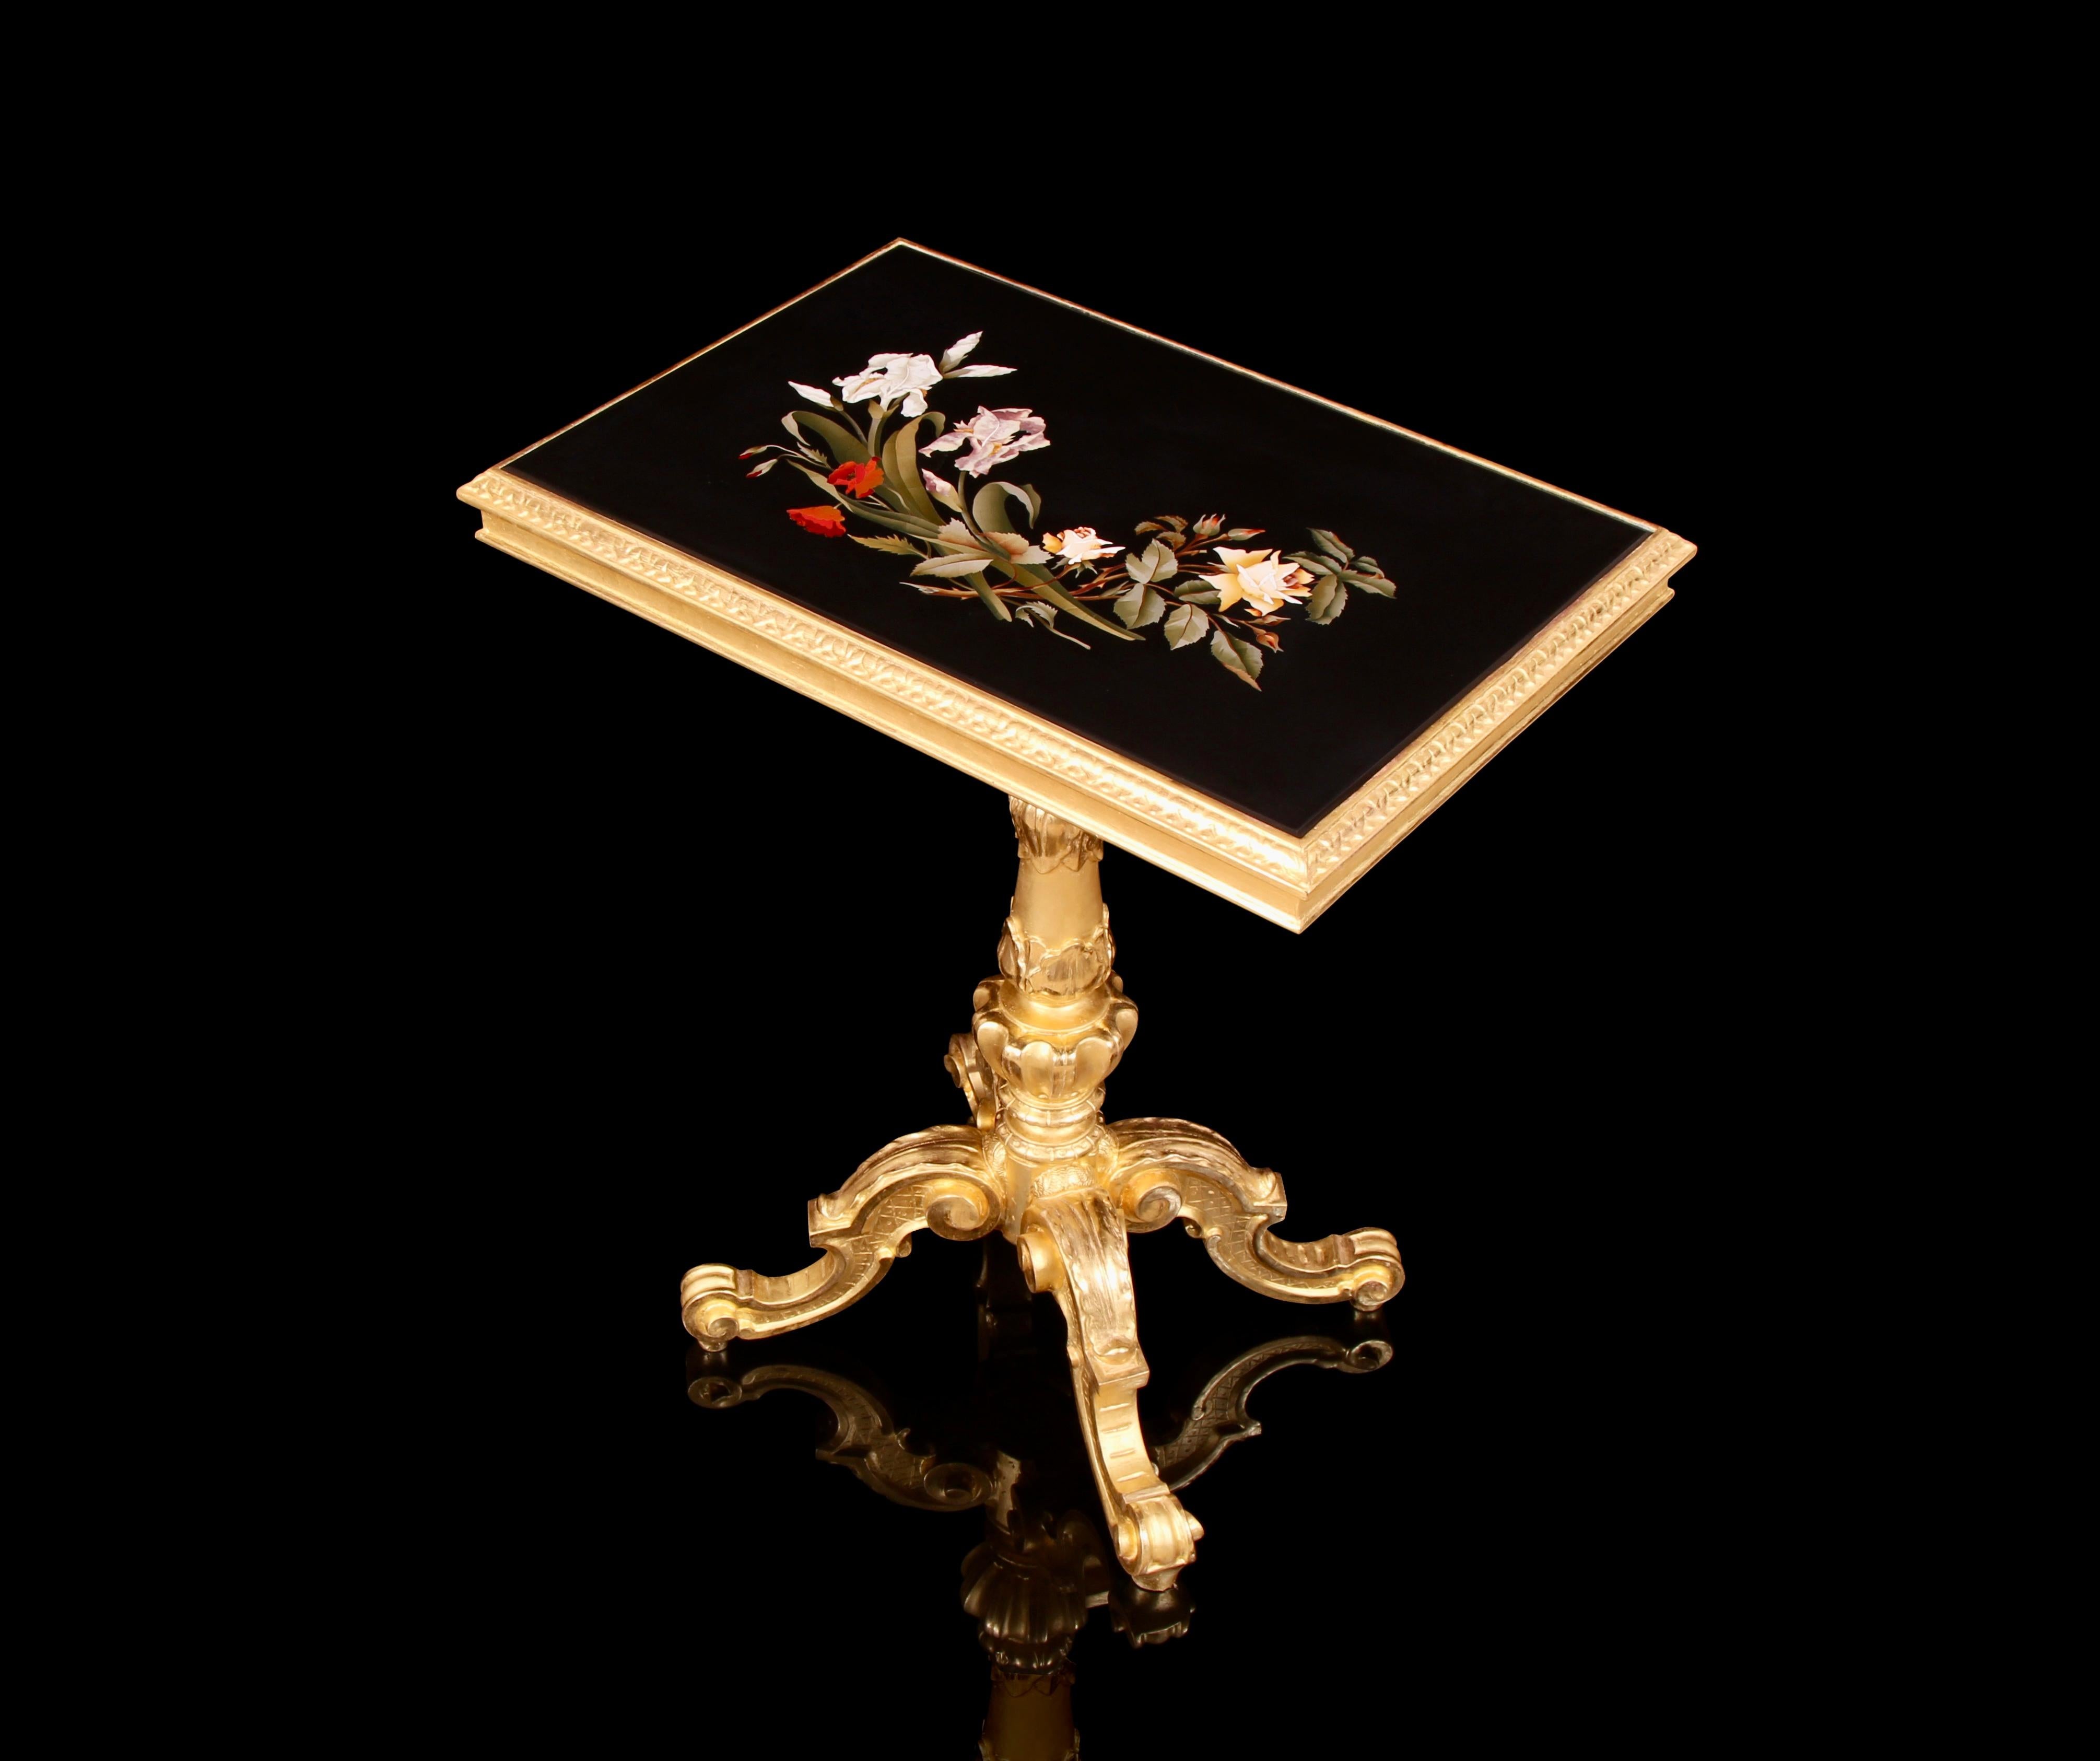 Wichtige palastartige & seltene 19. Jahrhundert Pietra Dura Giltwood Zentrum Tisch. Dieser prächtige rechteckige Tisch enthält ein exquisit eingelegtes Florentine Pietra Dura-Kunstwerk. Die wirklich unglaublichen und farbenfrohen Hartsteine wurden